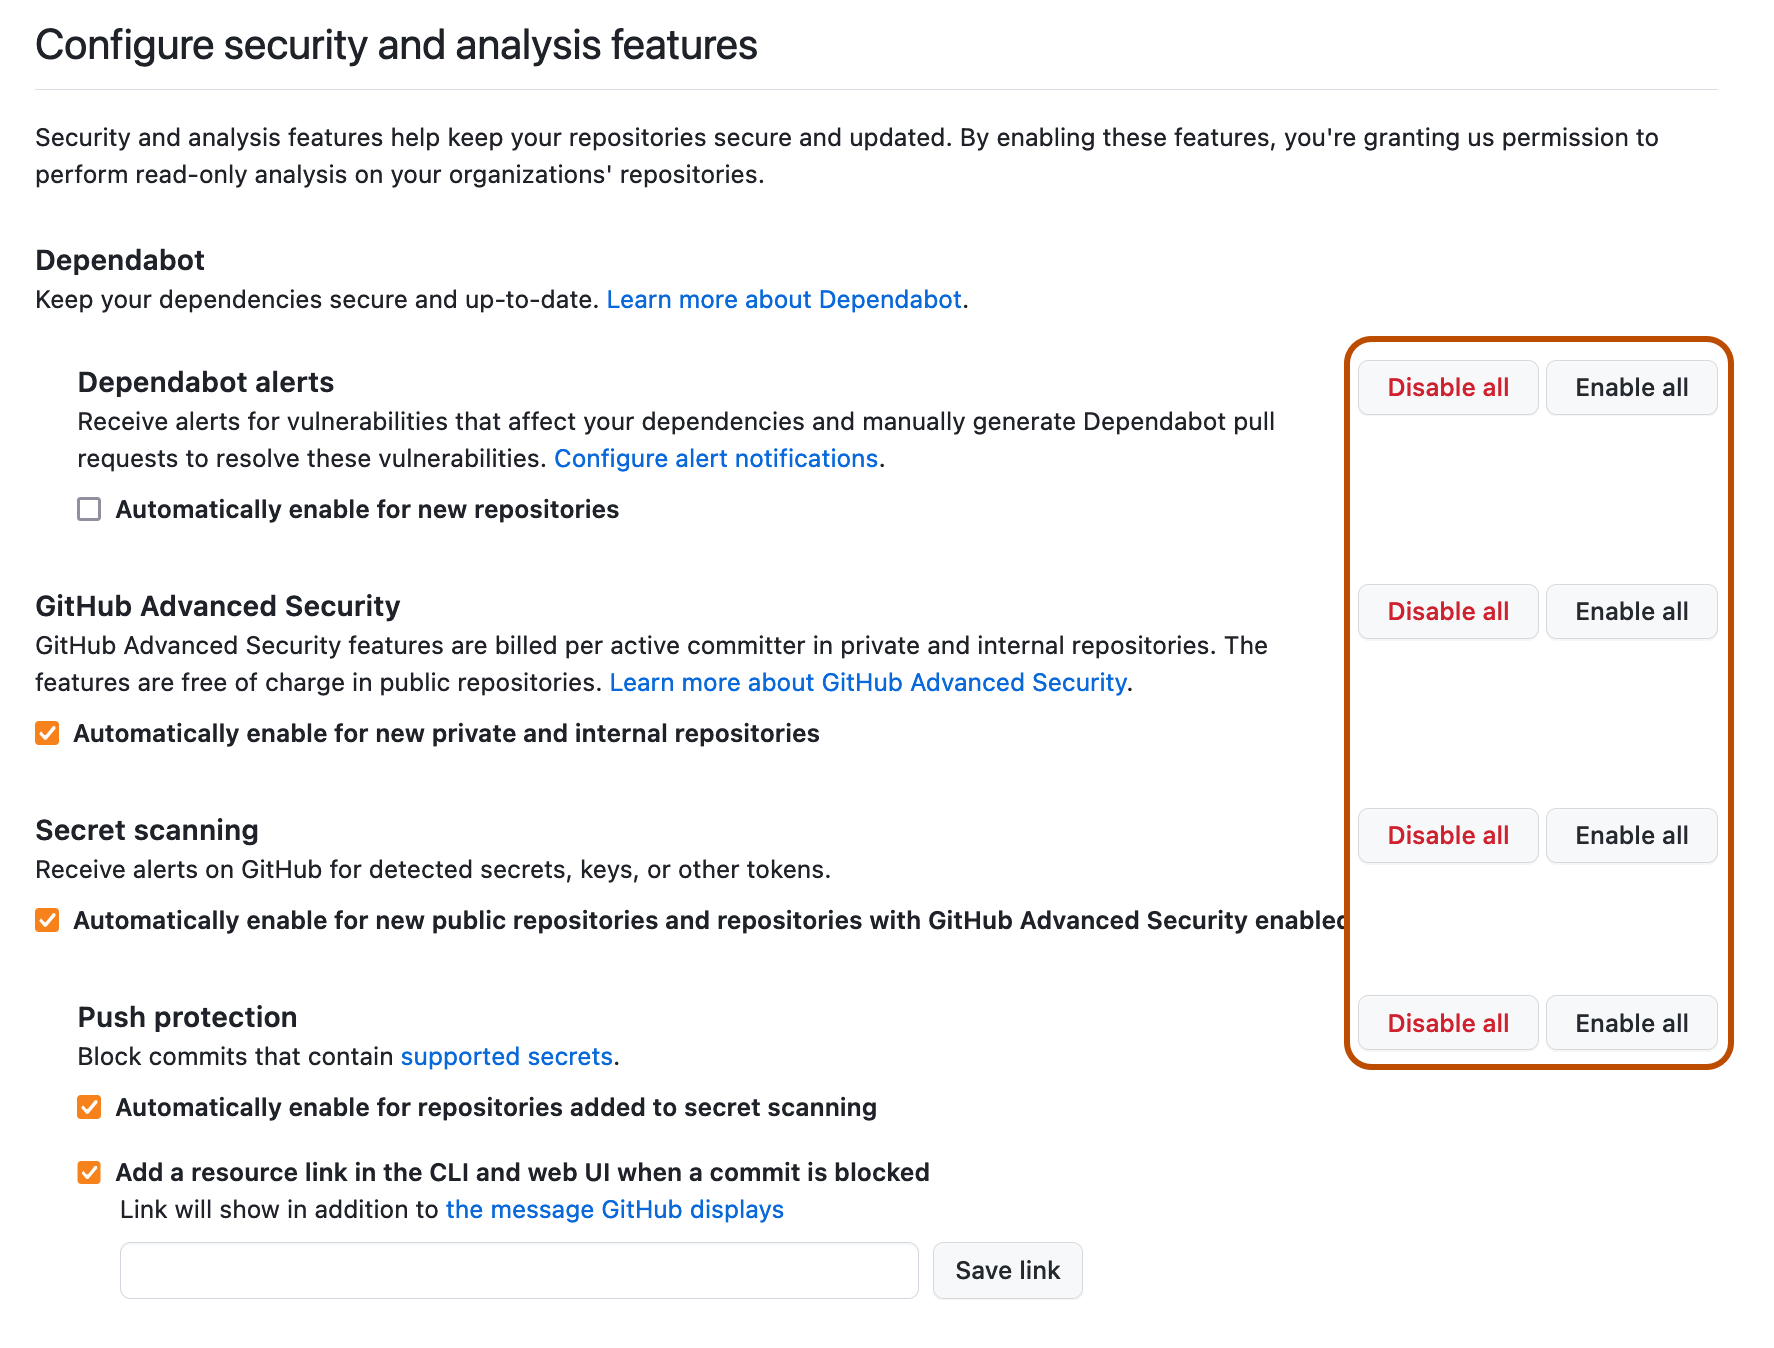 Captura de pantalla de la sección "Configurar características de seguridad y análisis" de la configuración empresarial. A la derecha de cada configuración se muestran los botones "Habilitar todo" y "Deshabilitar todo", que se resaltan en naranja oscuro.